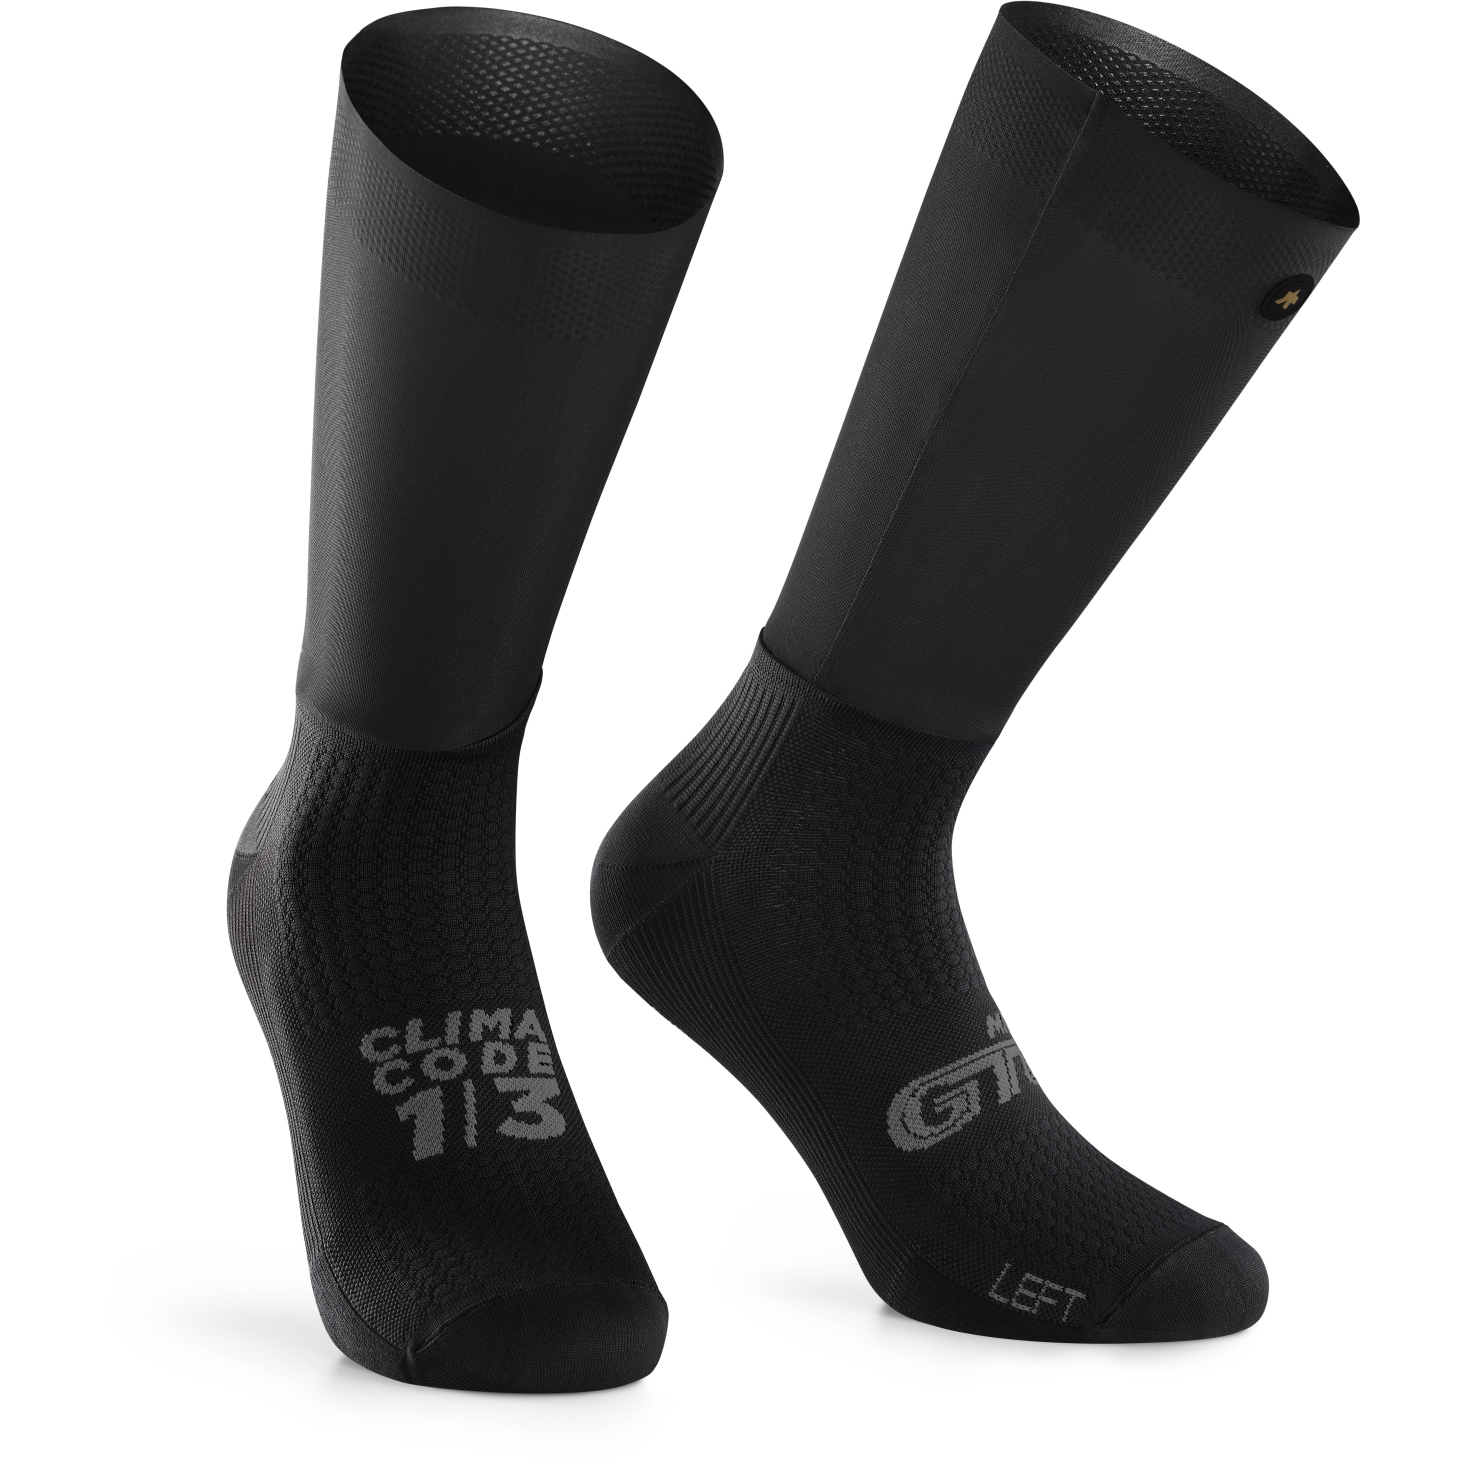 Produktbild von Assos GTO Socken - black series